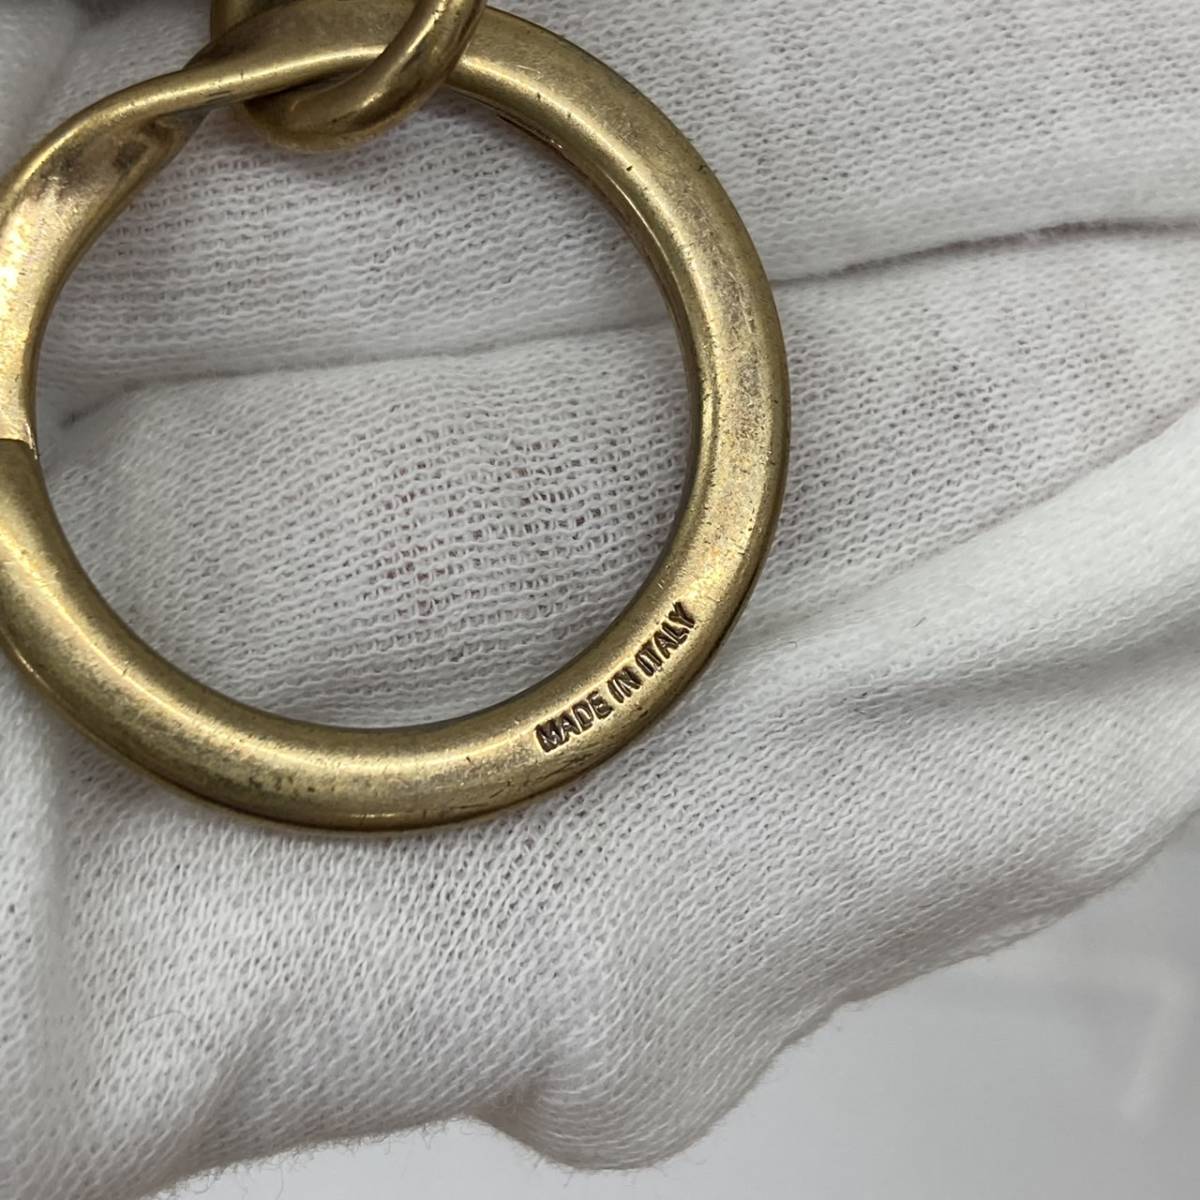 GUCCI Gucci кольцо для ключей аксессуары мелкие вещи черный латунь латунь кожа унисекс мужской женский wi мужской 